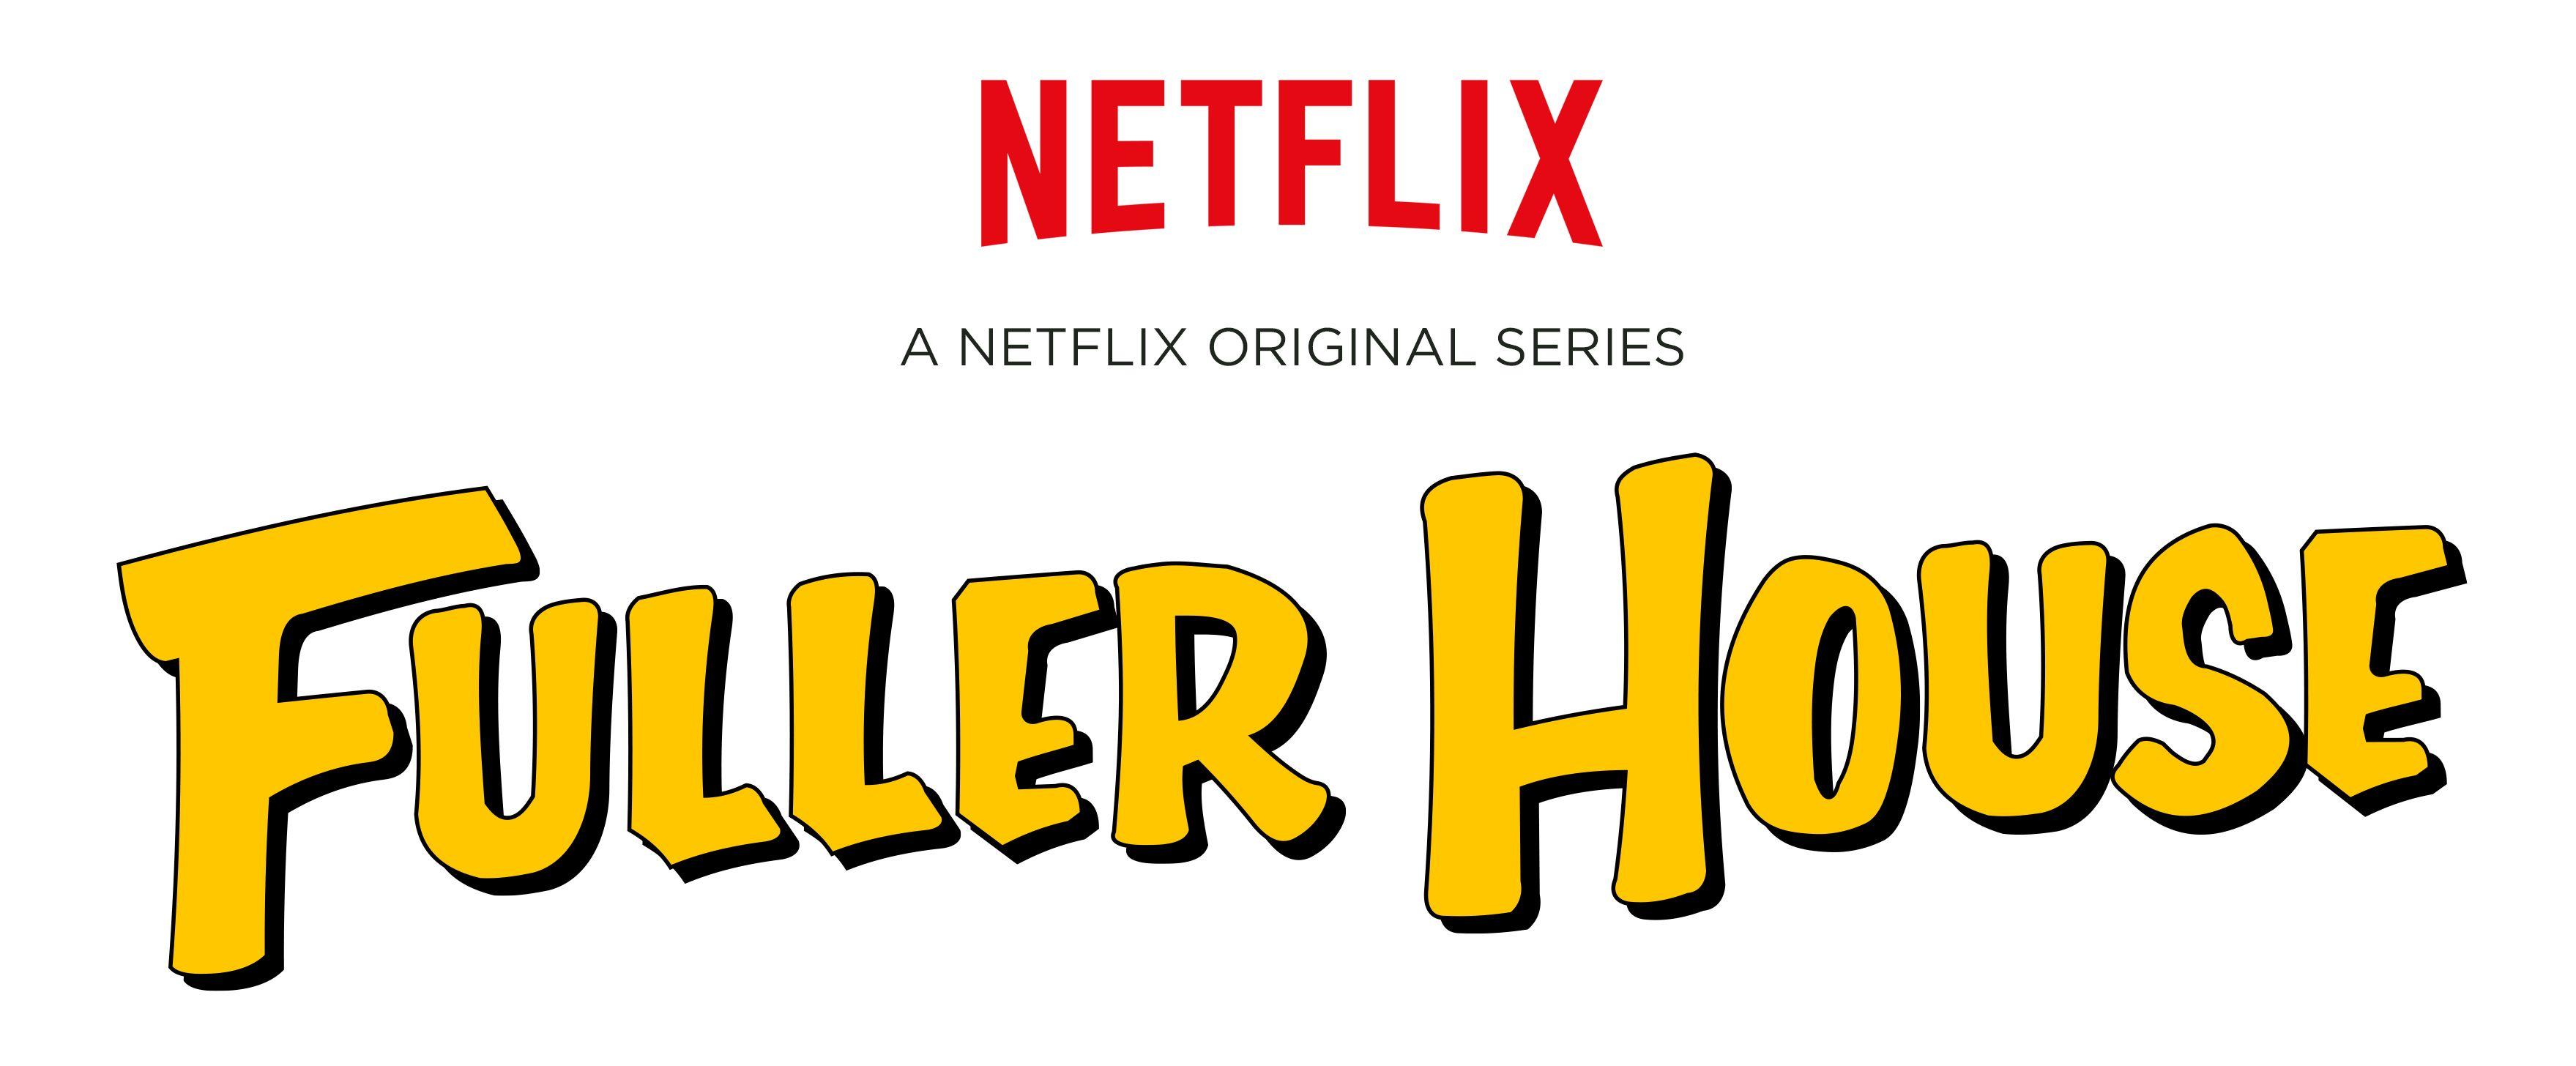 Netflix Series Logo - Fuller House TV Series Logo Revealed